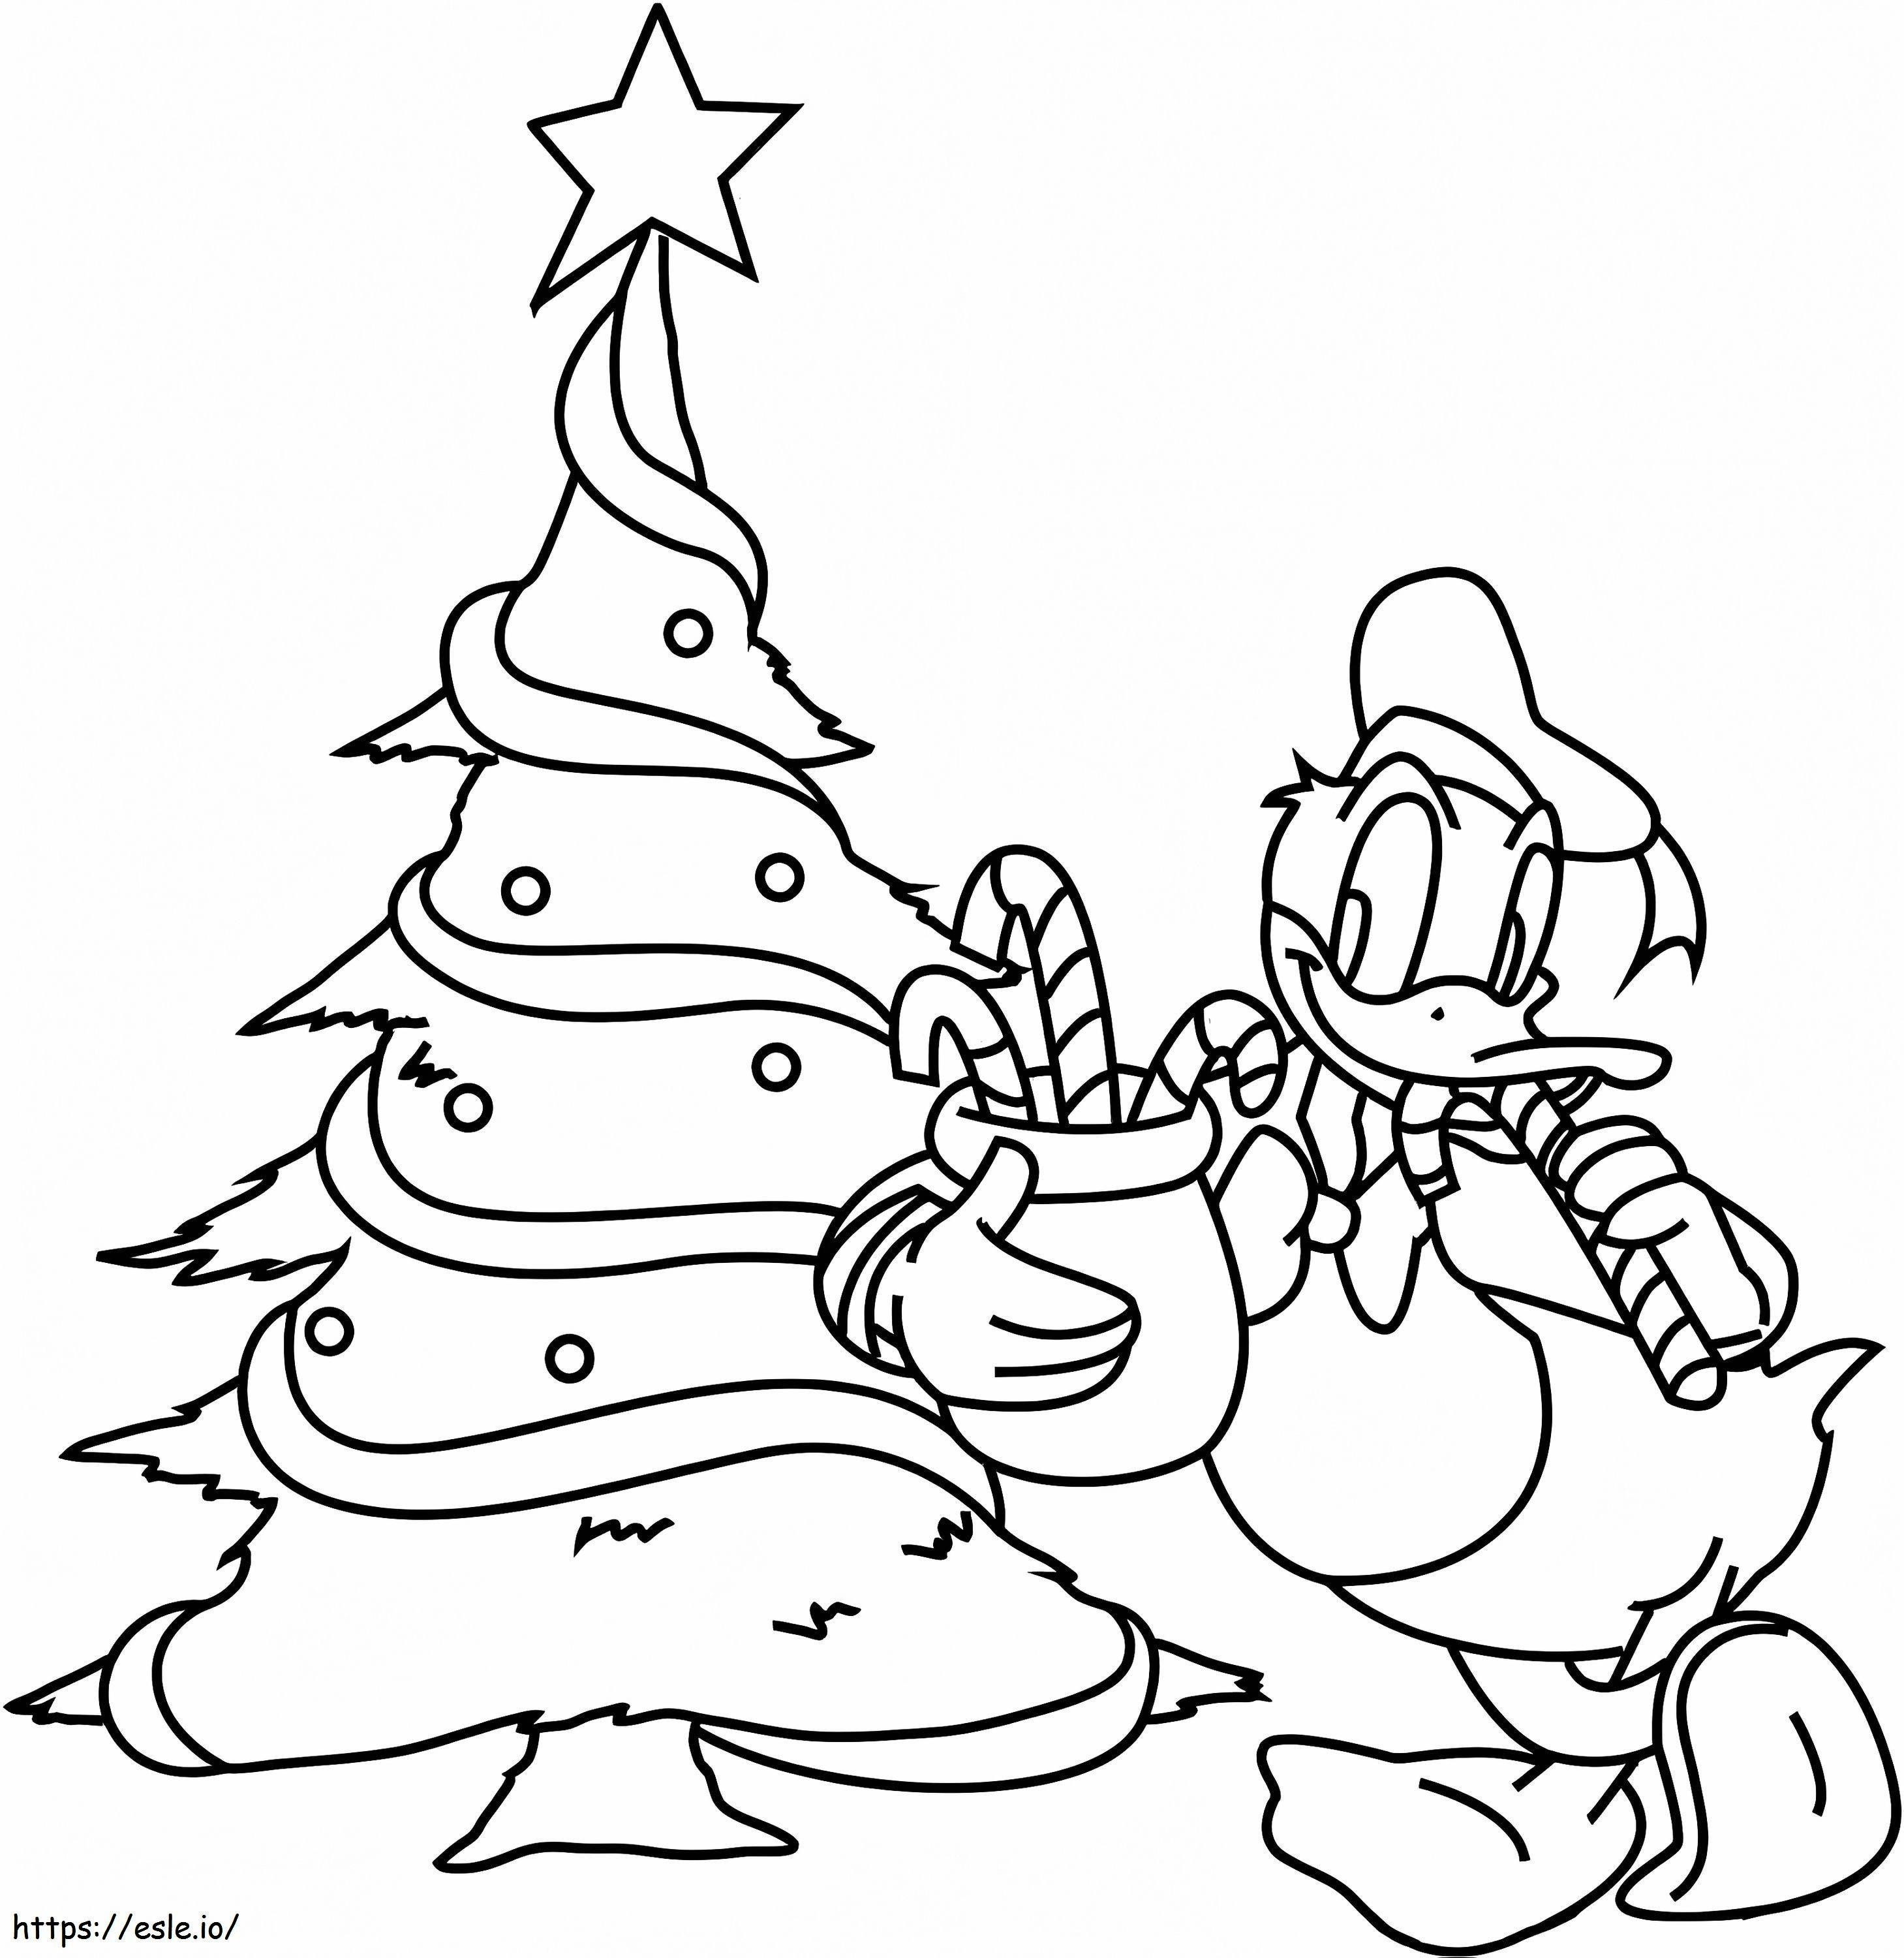 Donald Duck și pomul de Crăciun de colorat